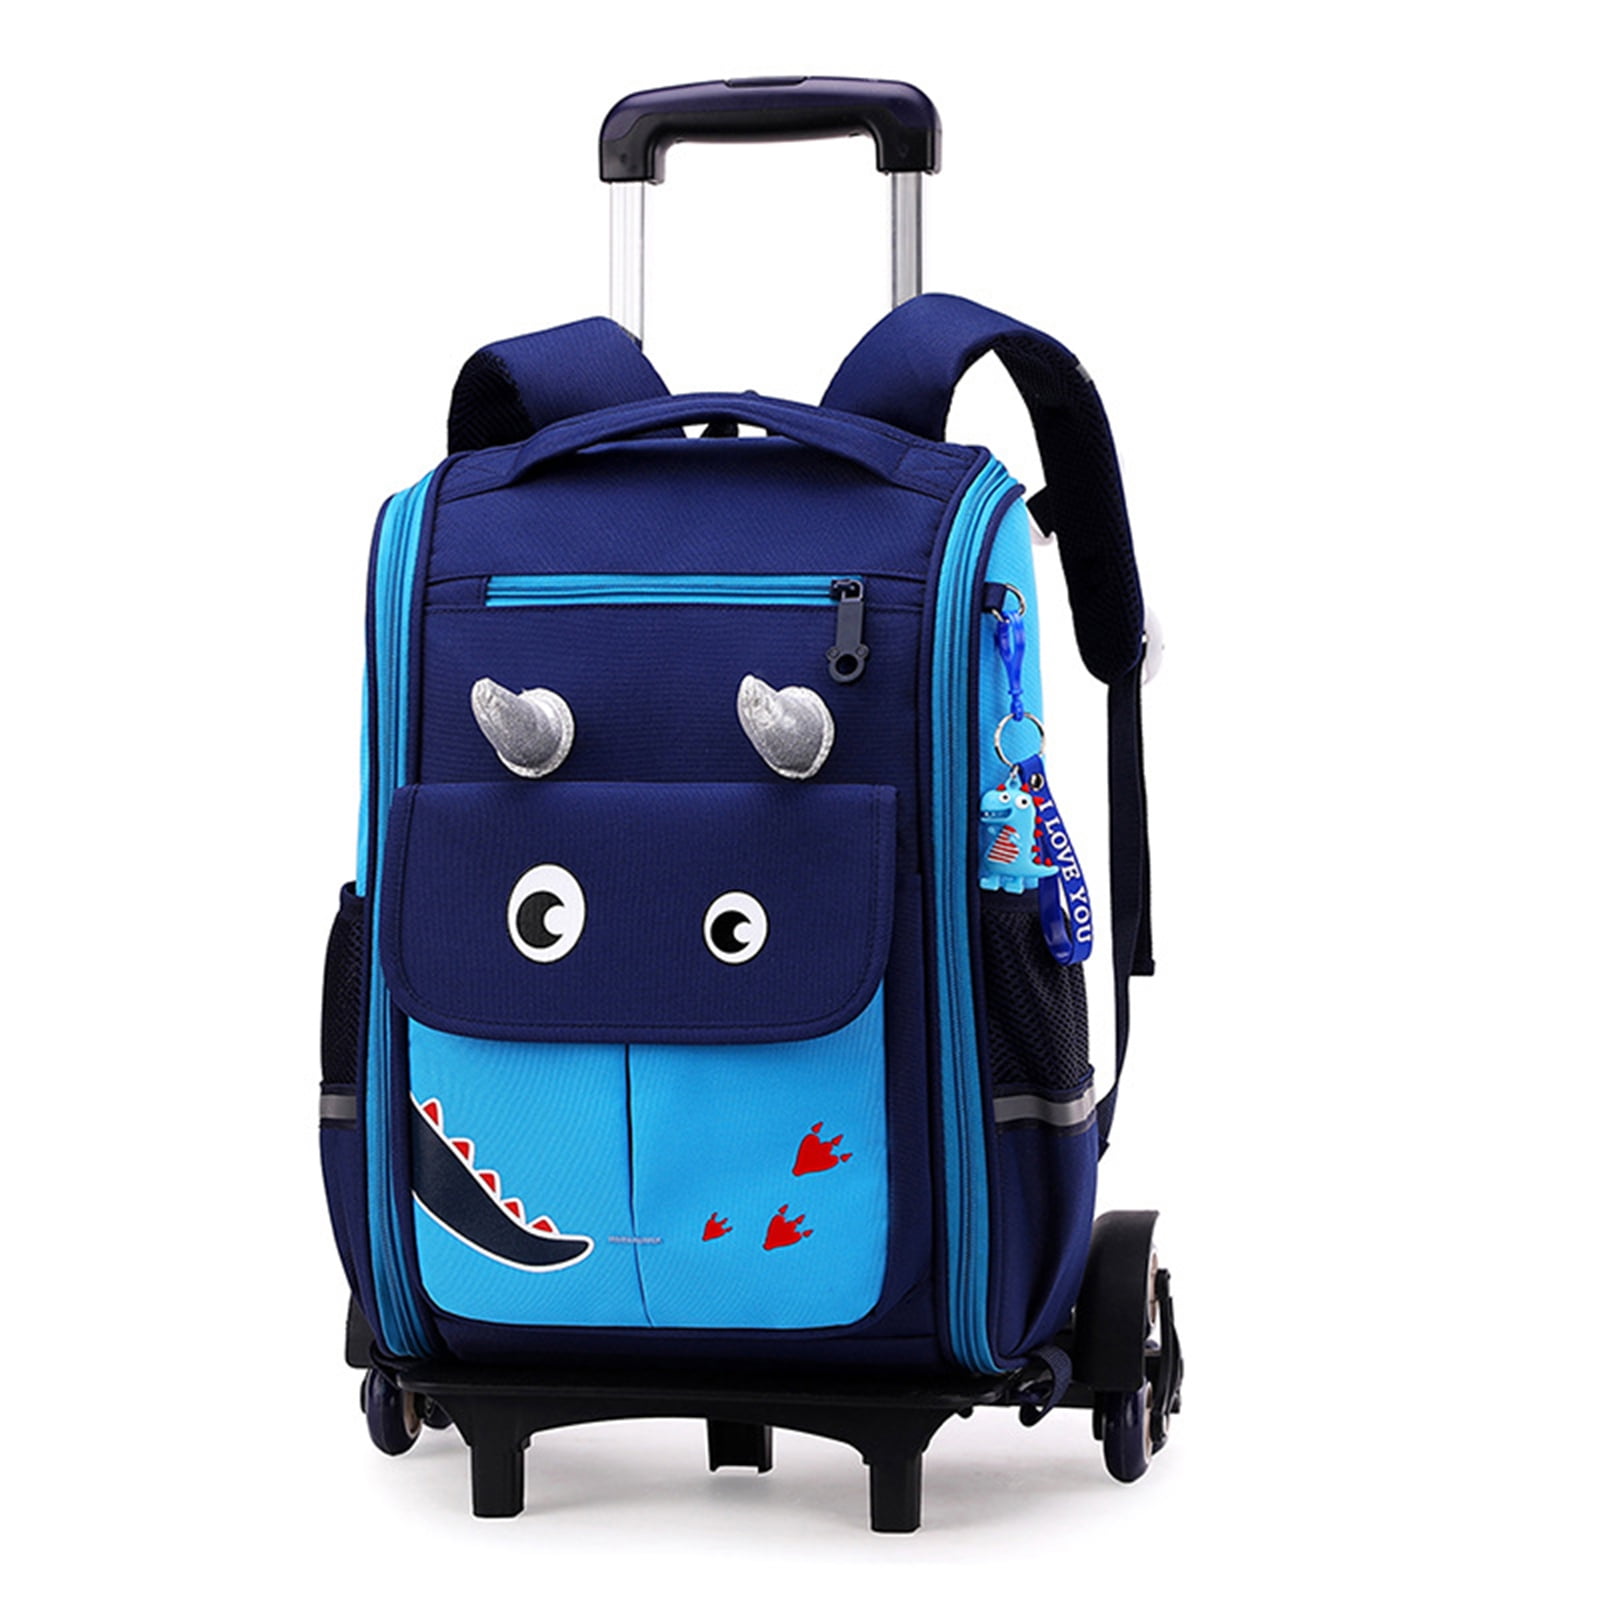 Latest Model School Trolley Bag for Girls ( 6 Wheels Trolley )